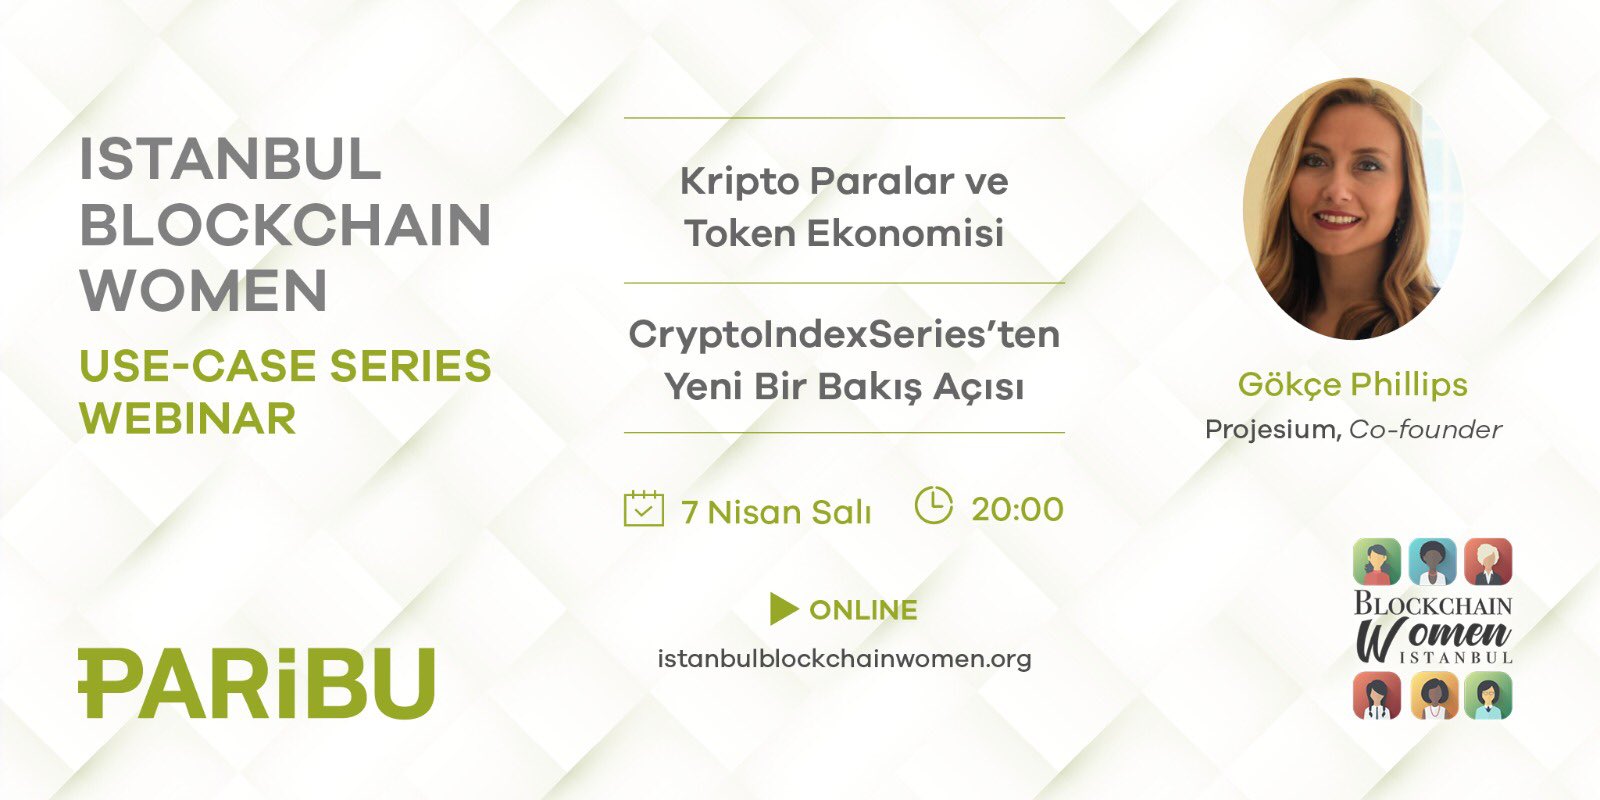 Istanbul Blockchain Women Use Case Webinar Serisinin Son Bölümü 7 Nisanda